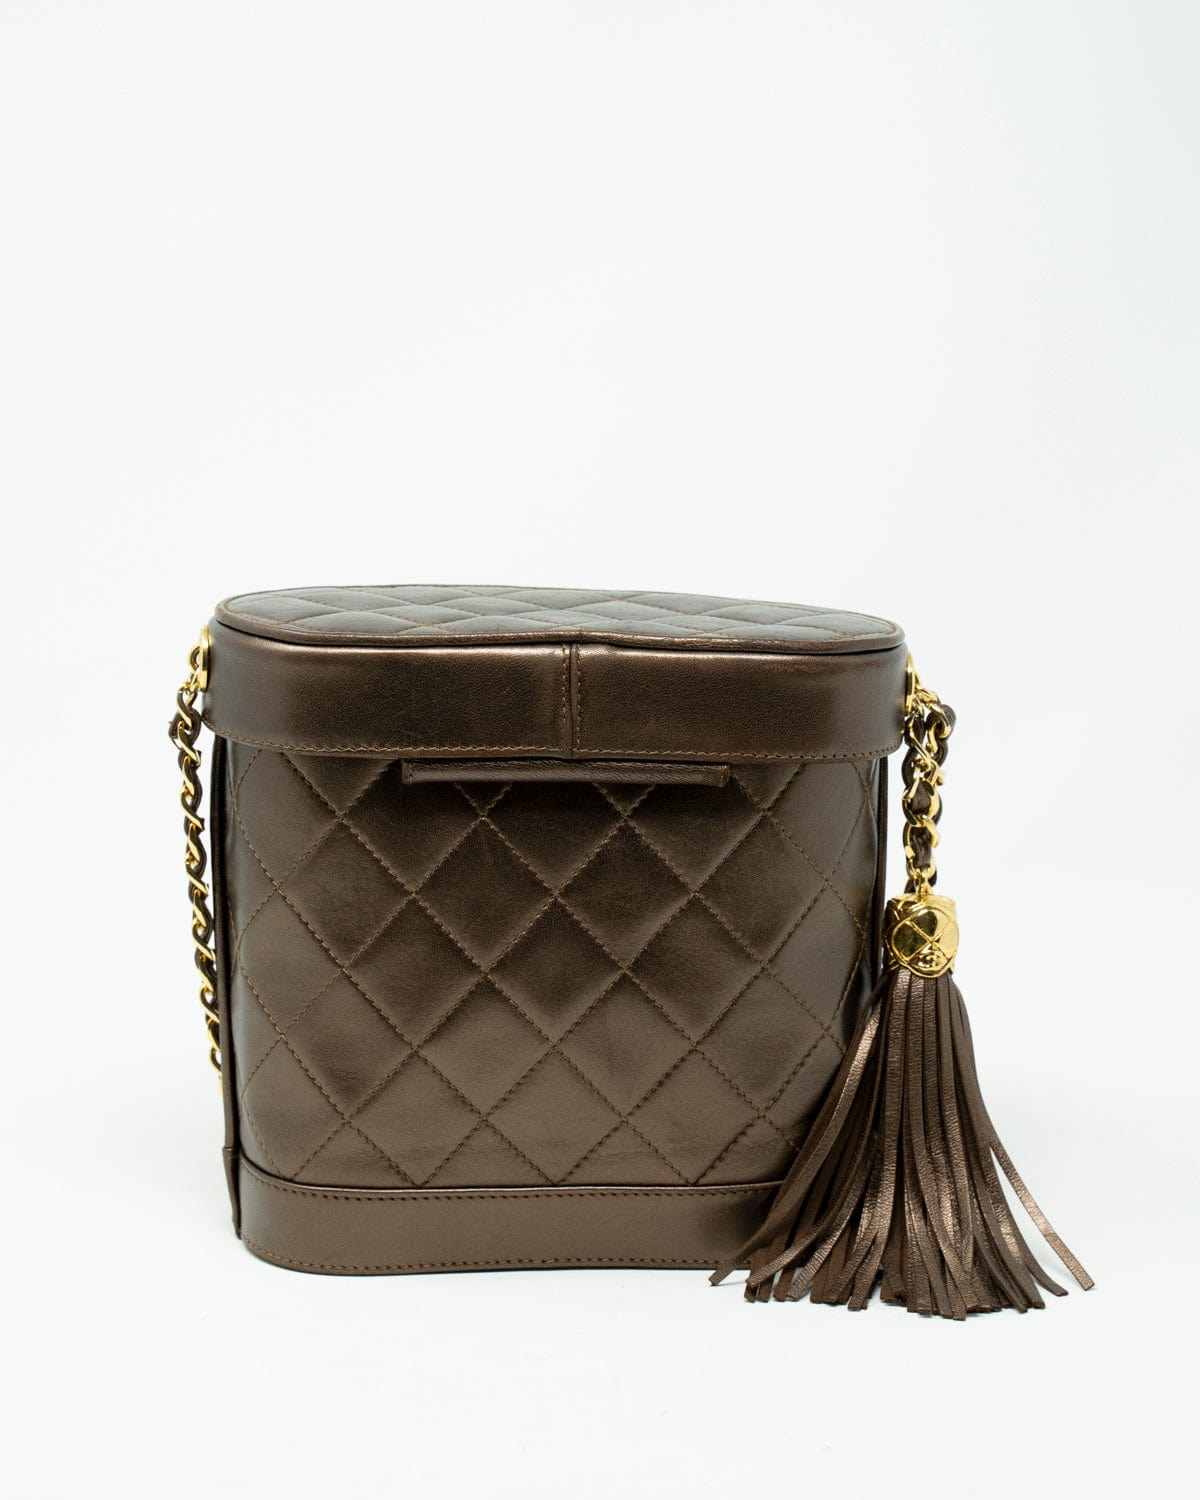 Chanel Vintage Chanel Bronze Vanity Case Bag - AWL2271